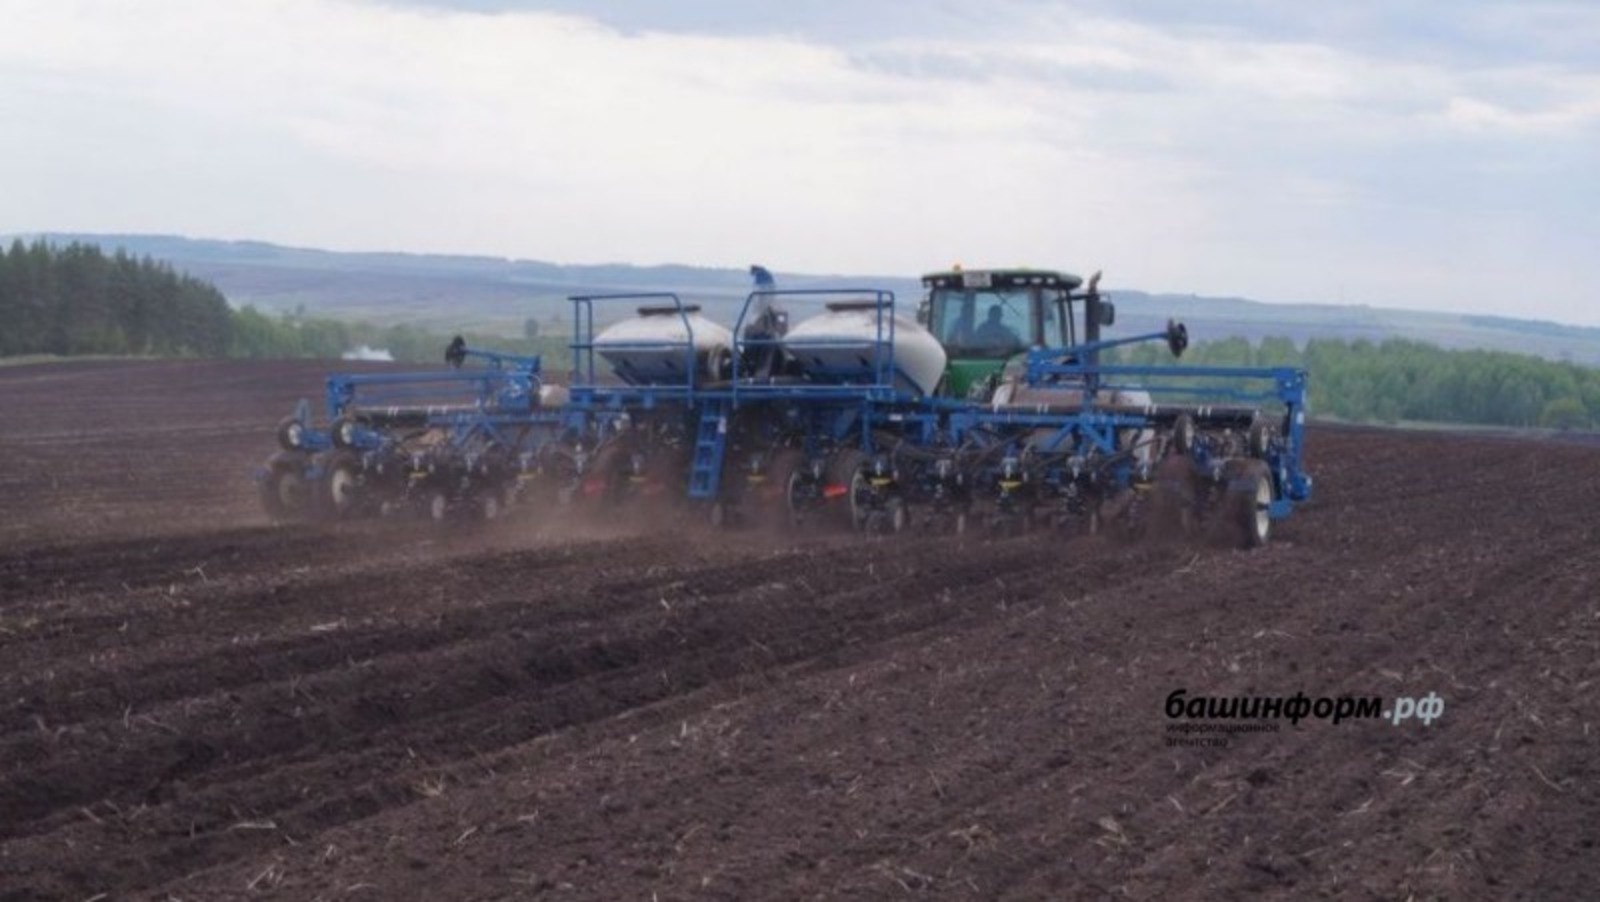 Четыре миллиарда рублей будет направлено на поддержку сельского хозяйства в Башкирии